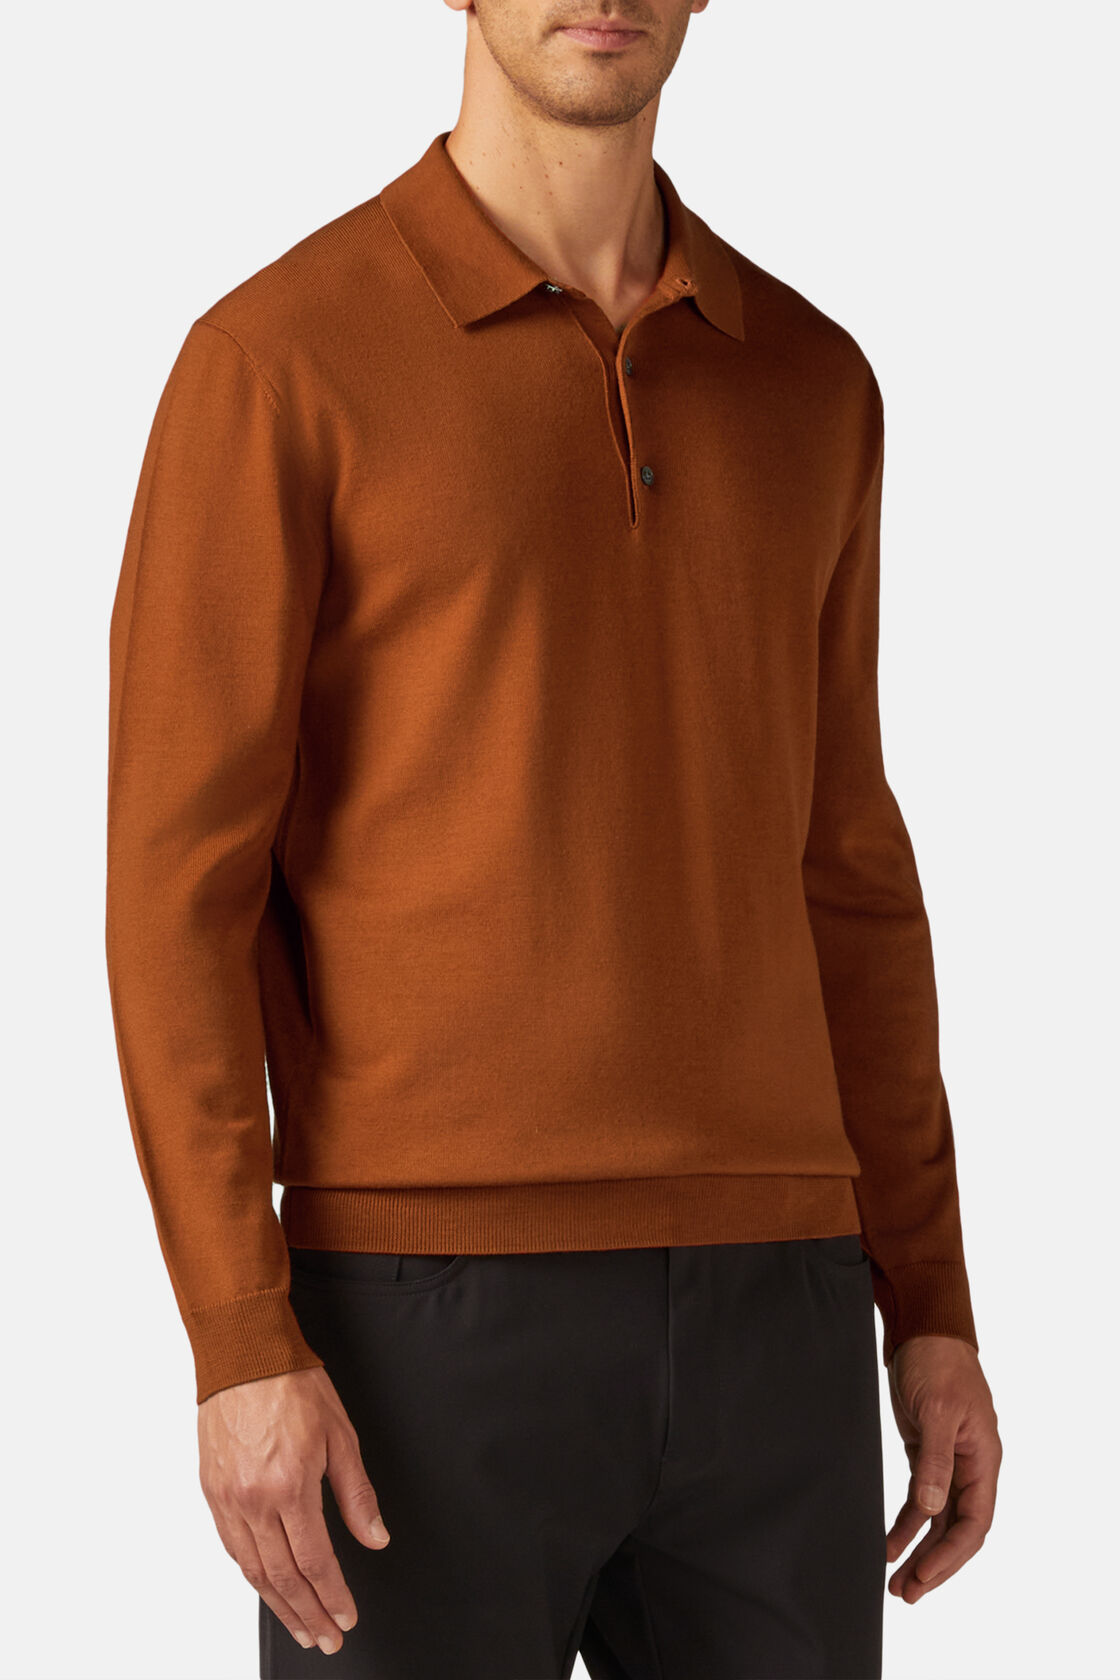 Orange Merino Wool Knitted Polo Shirt, Orange, hi-res